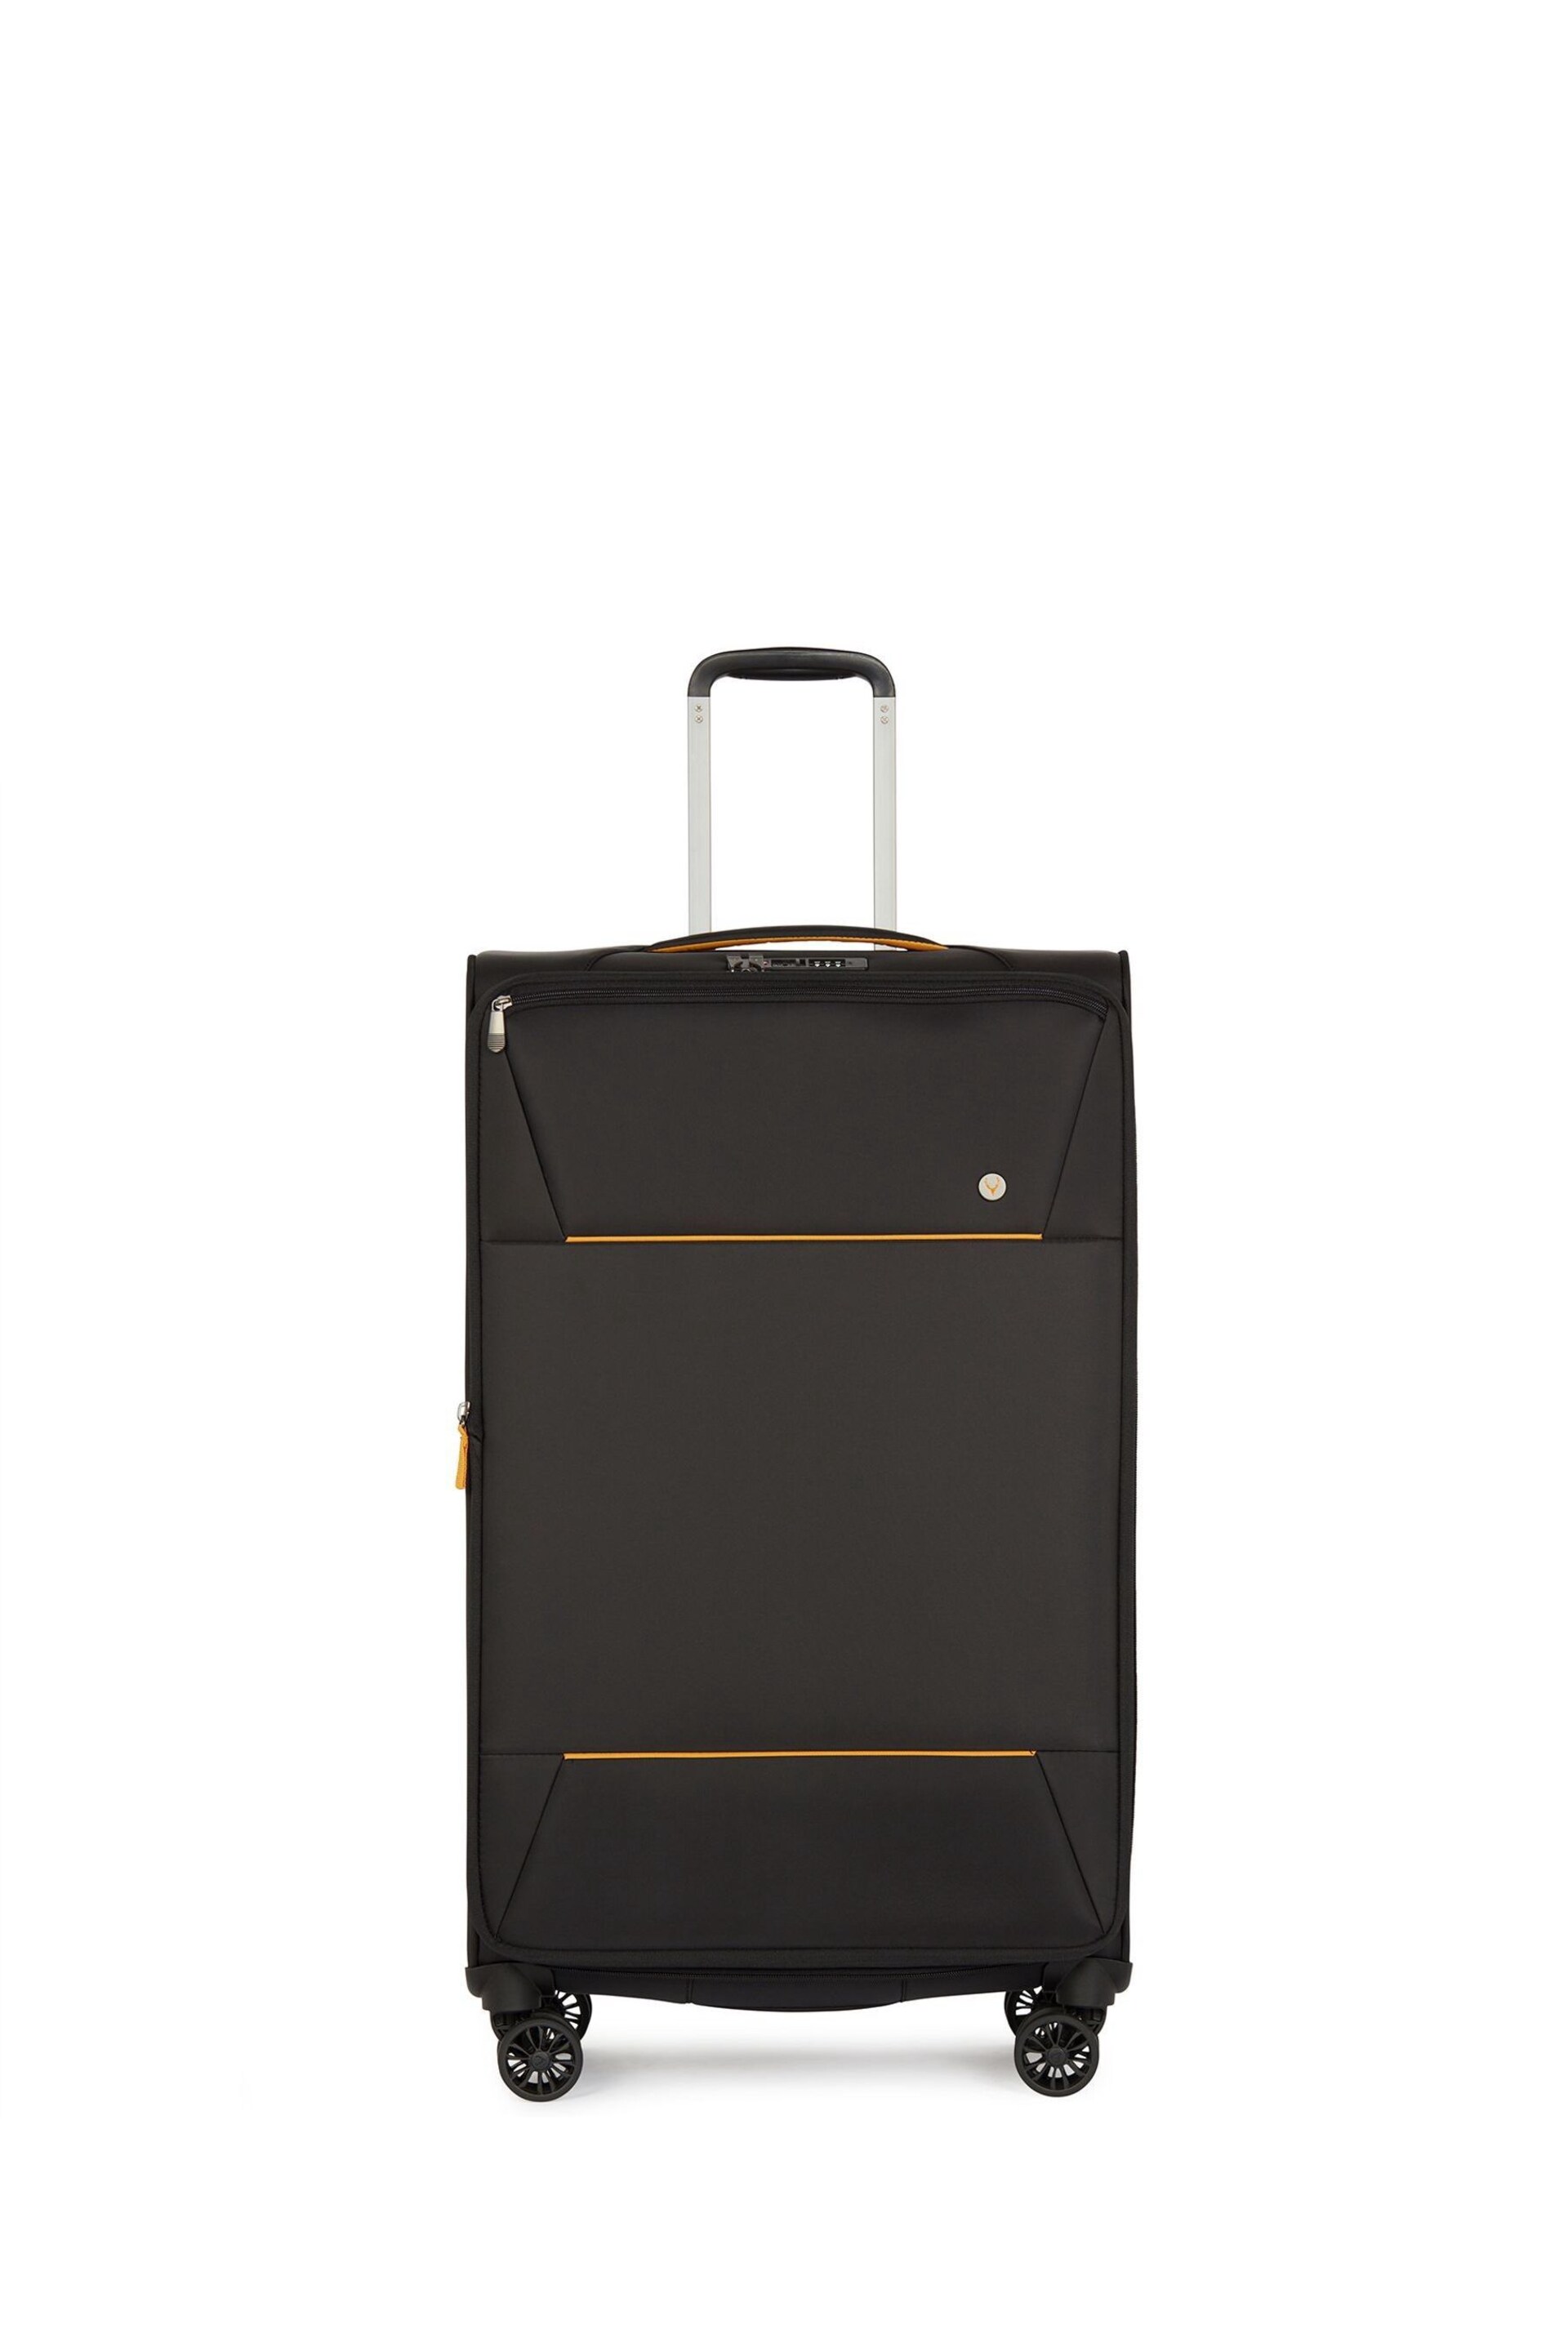 Antler Brixham Large Black Suitcase - Image 1 of 6